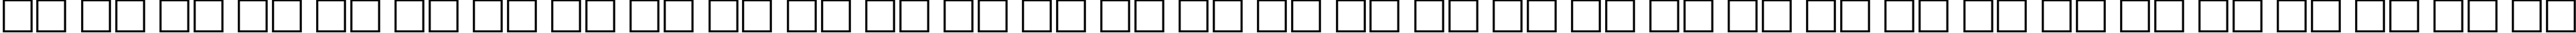 Пример написания русского алфавита шрифтом Morpheus Regular